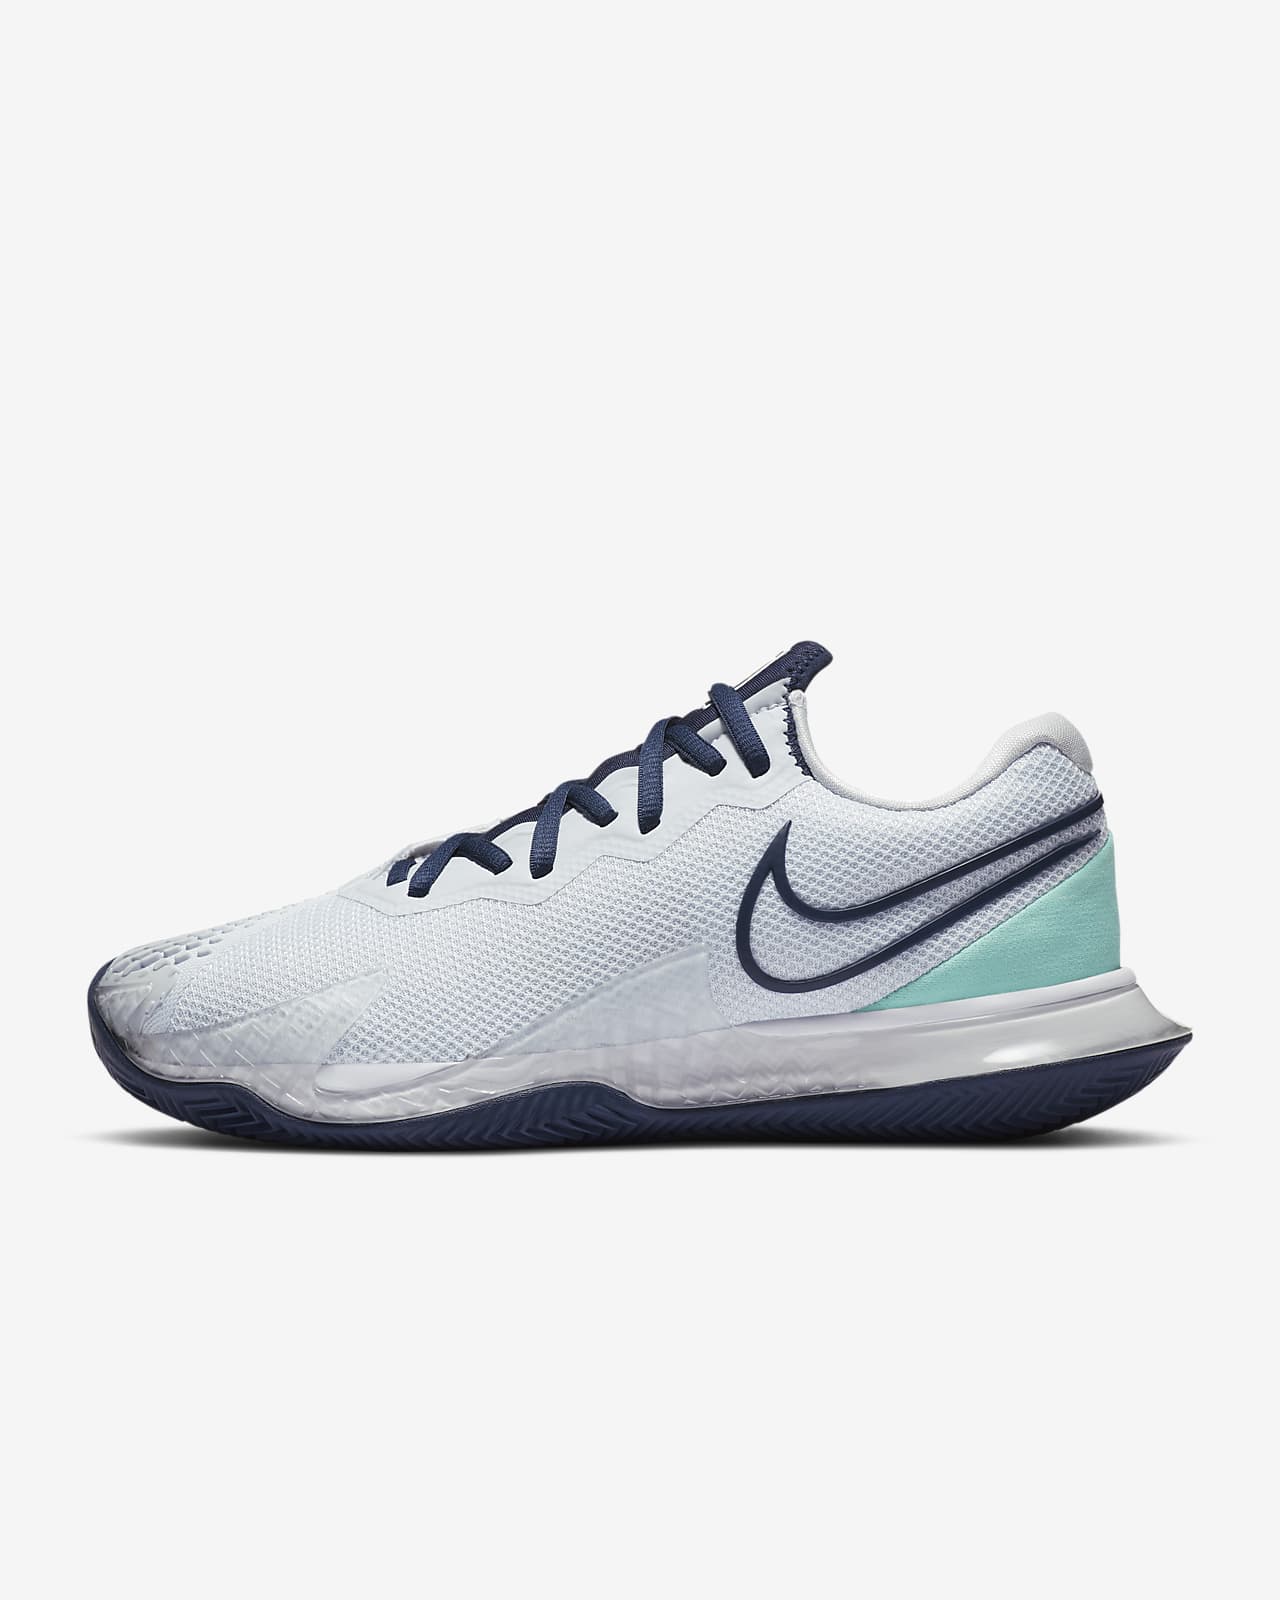 Clay Court Tennis Shoe. Nike DK